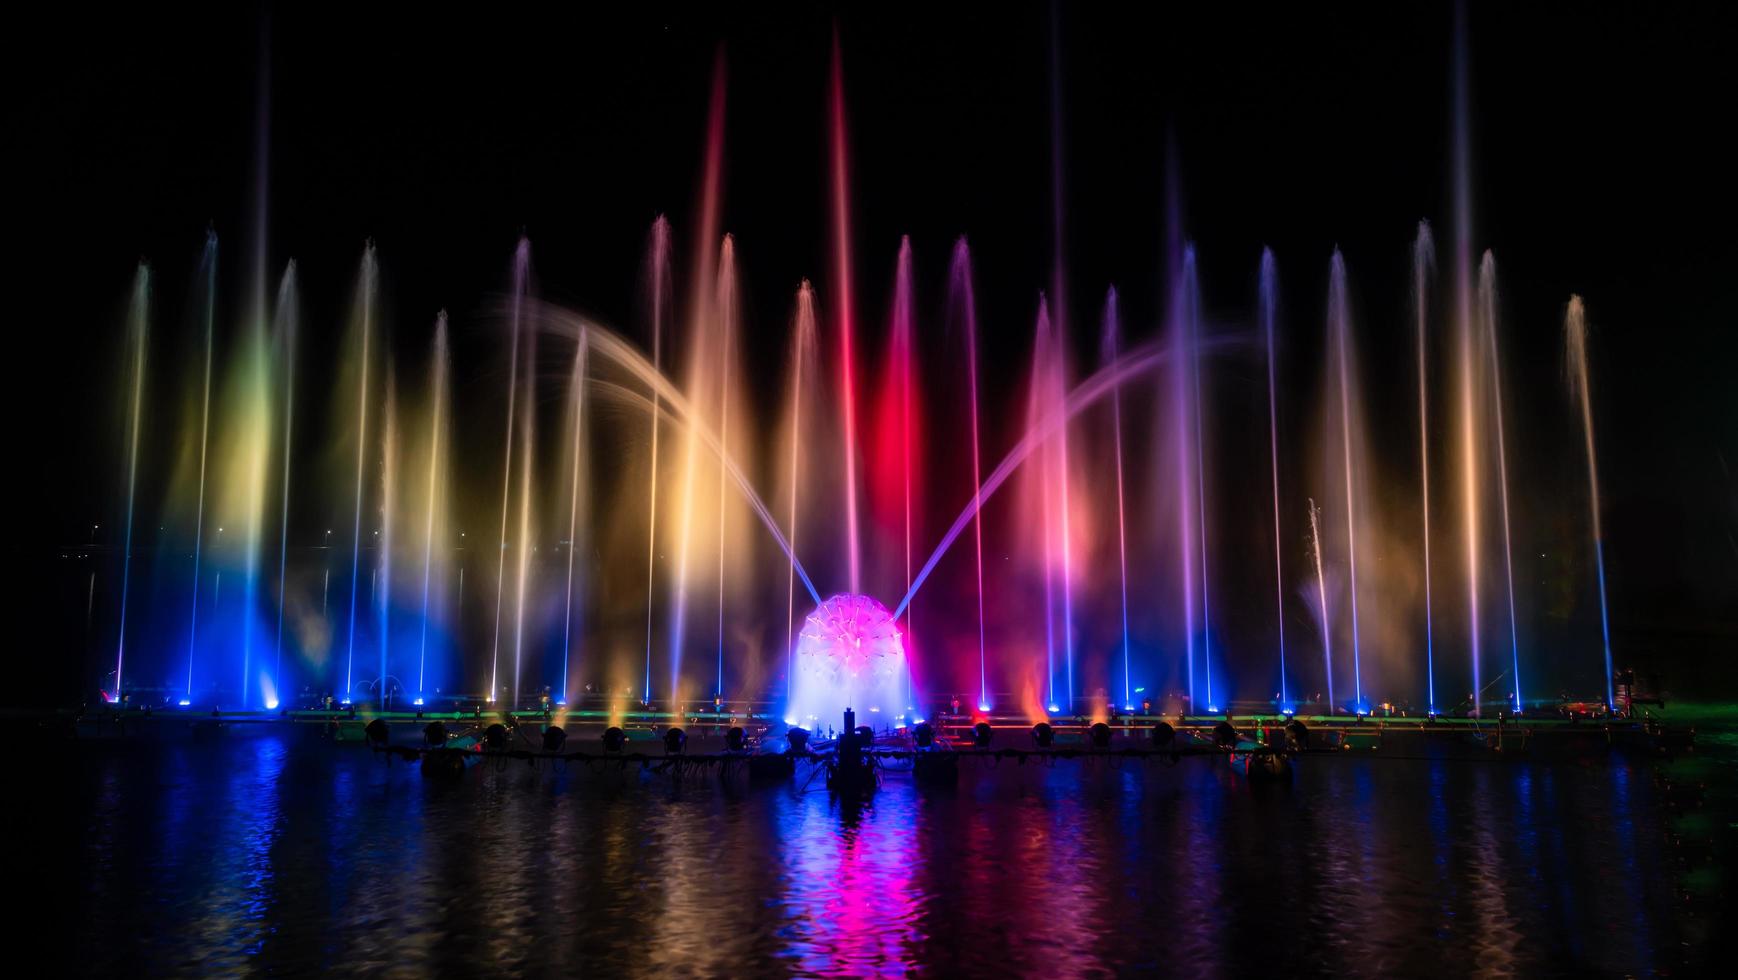 la fontana colorata che balla per celebrare l'anno con sfondo scuro del cielo notturno. foto